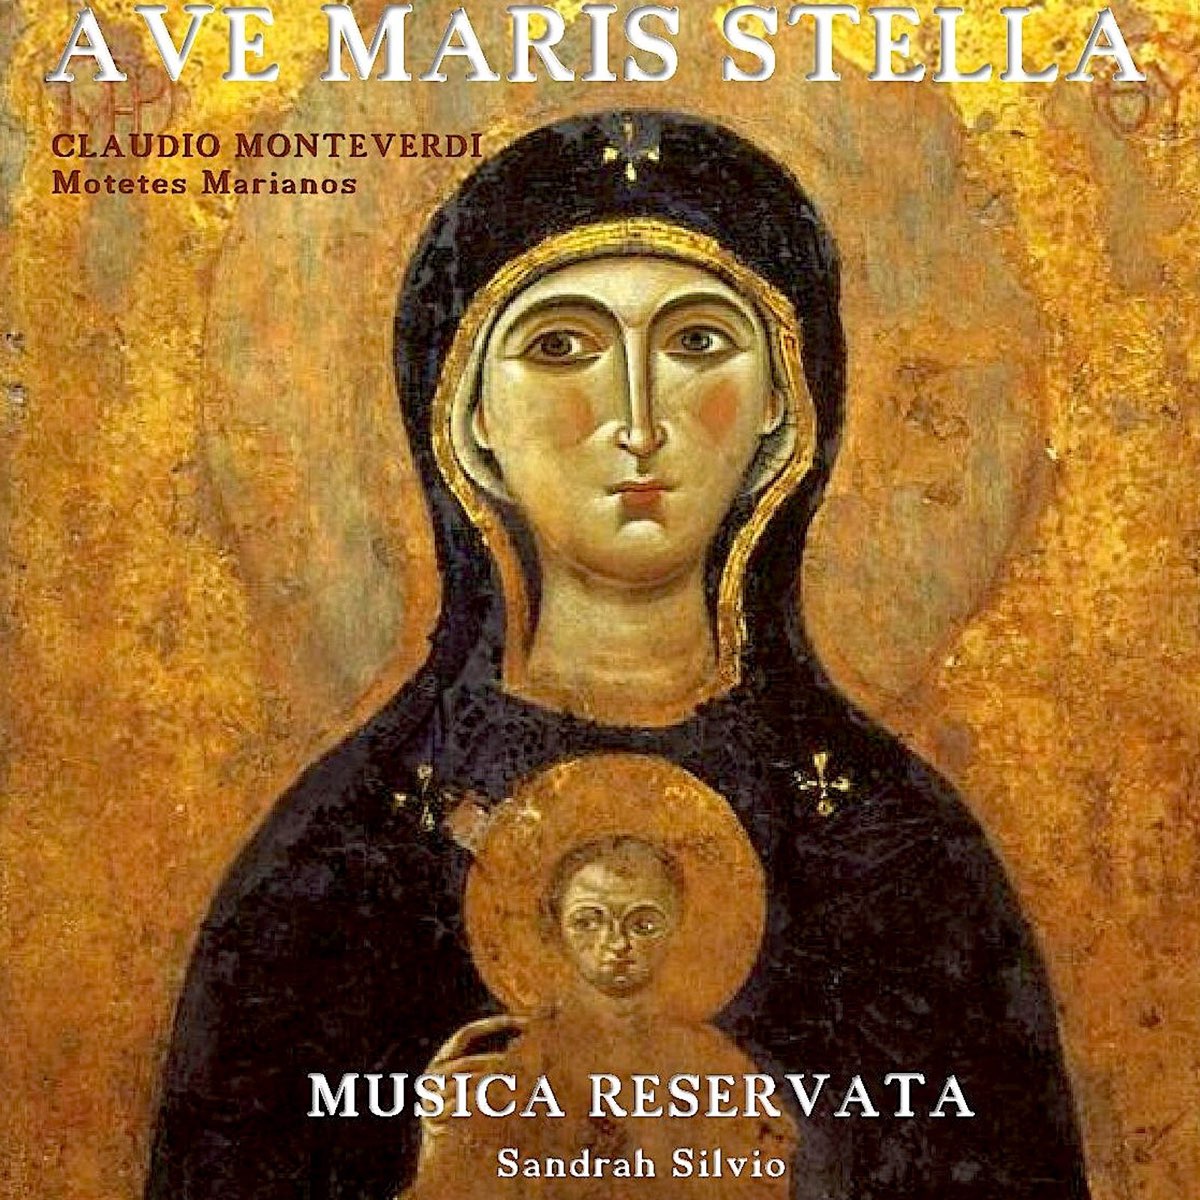 Ave Maris Stella Motetes Marianos Claudio Monteverdi By Musica Reservata Sandrah Silvio On Apple Music